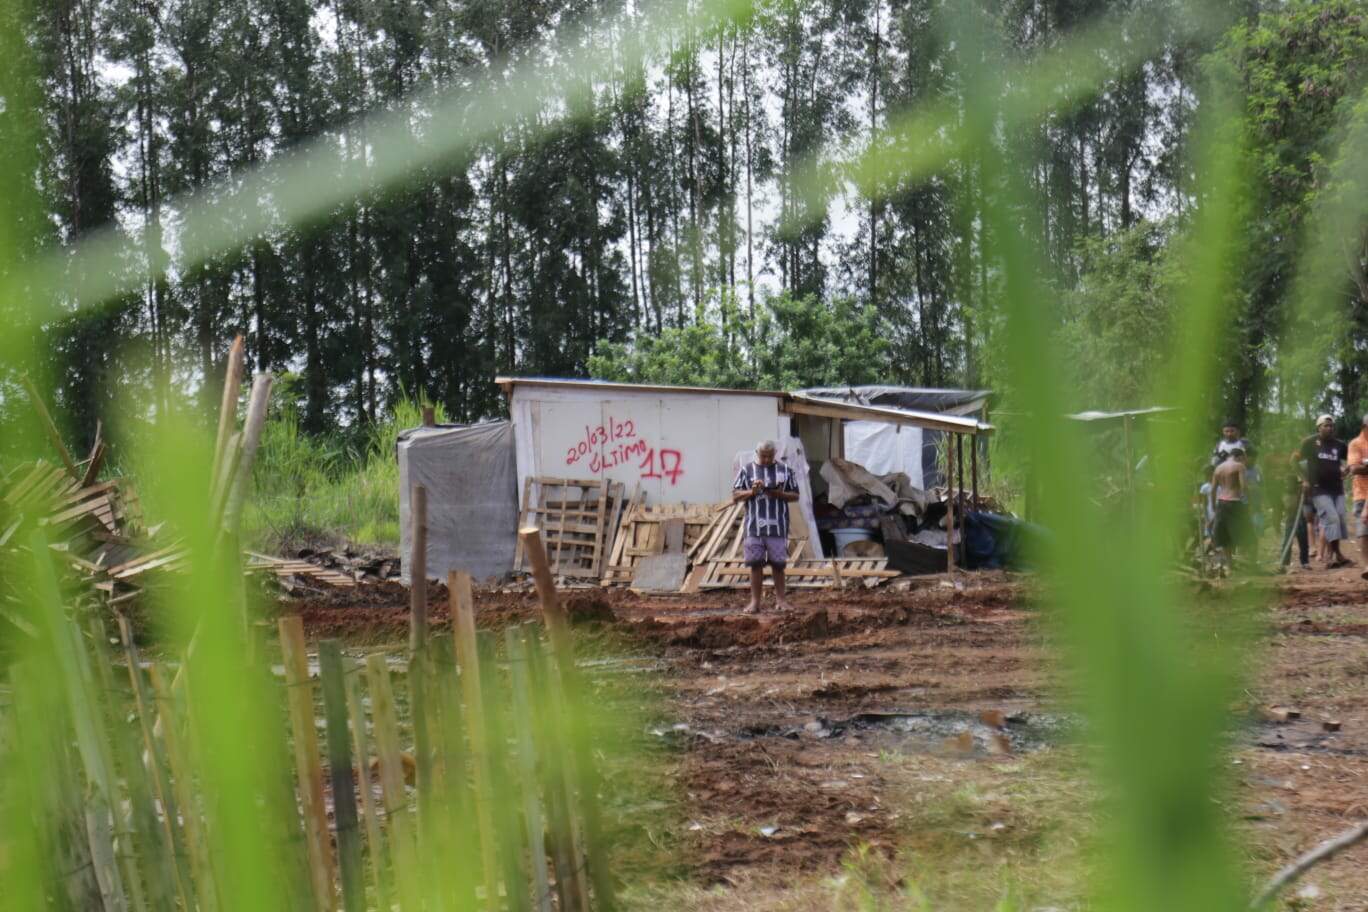 whatsapp image 2022 03 20 at 09.43.24 - Moradores lidam com aflição do despejo em desocupação de área no Parque do Sol